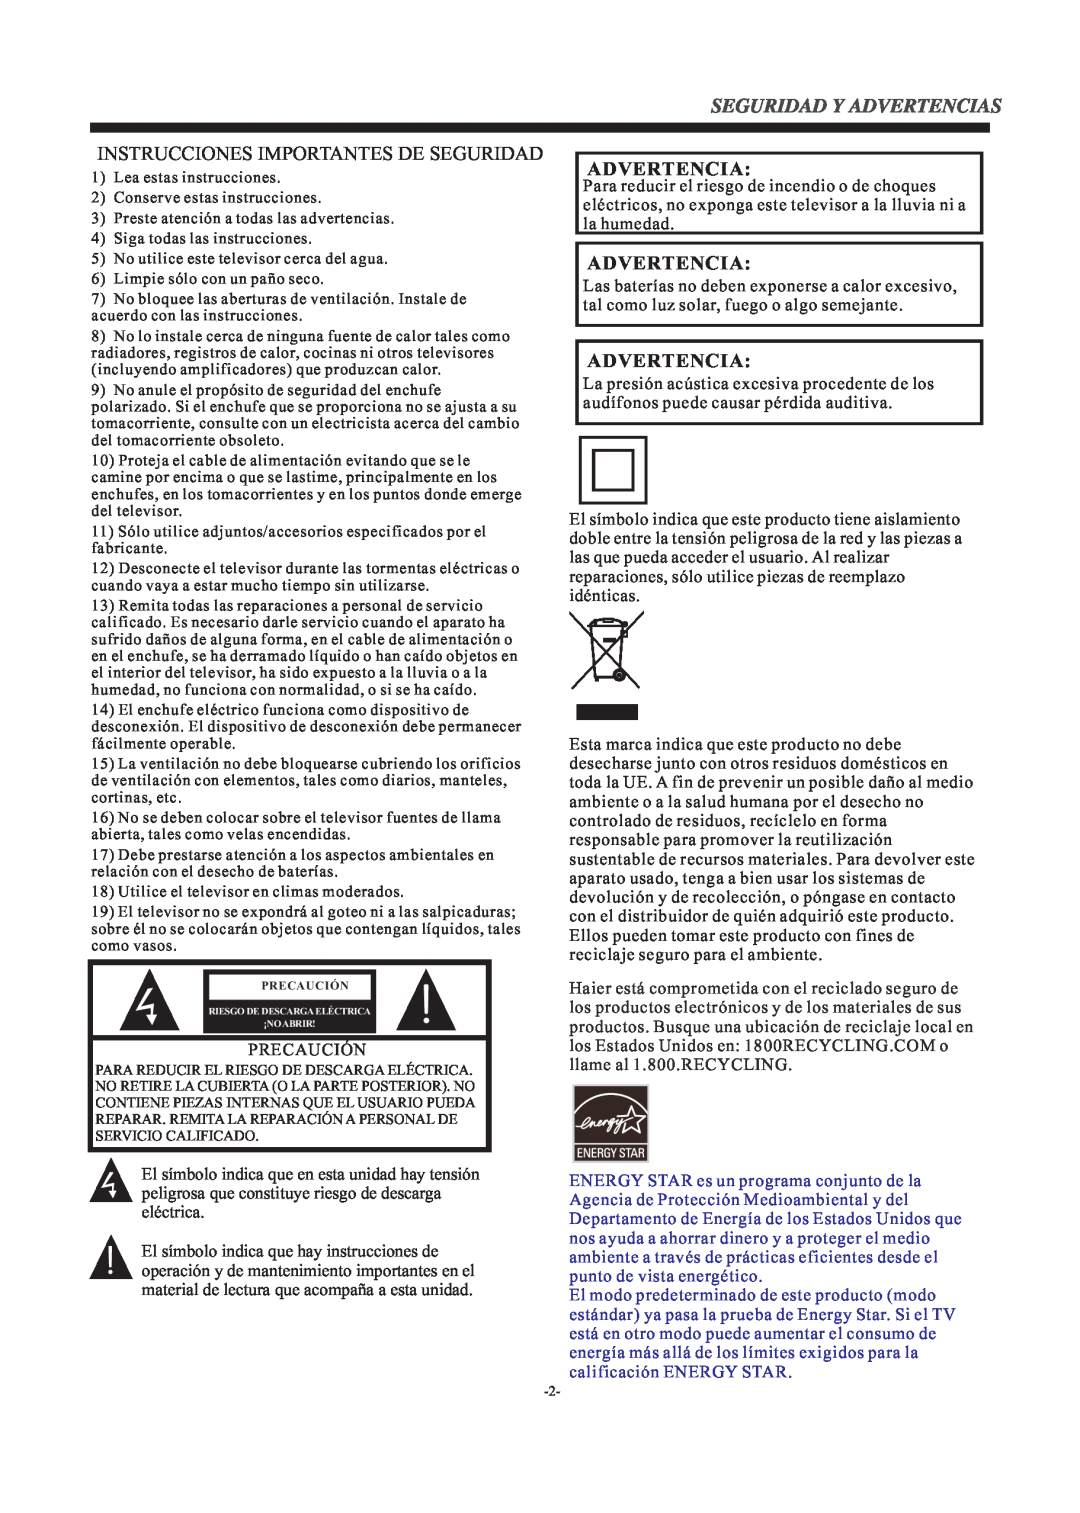 Haier LE24H3380 manual Advertencia, Instrucciones Importantes De Seguridad 